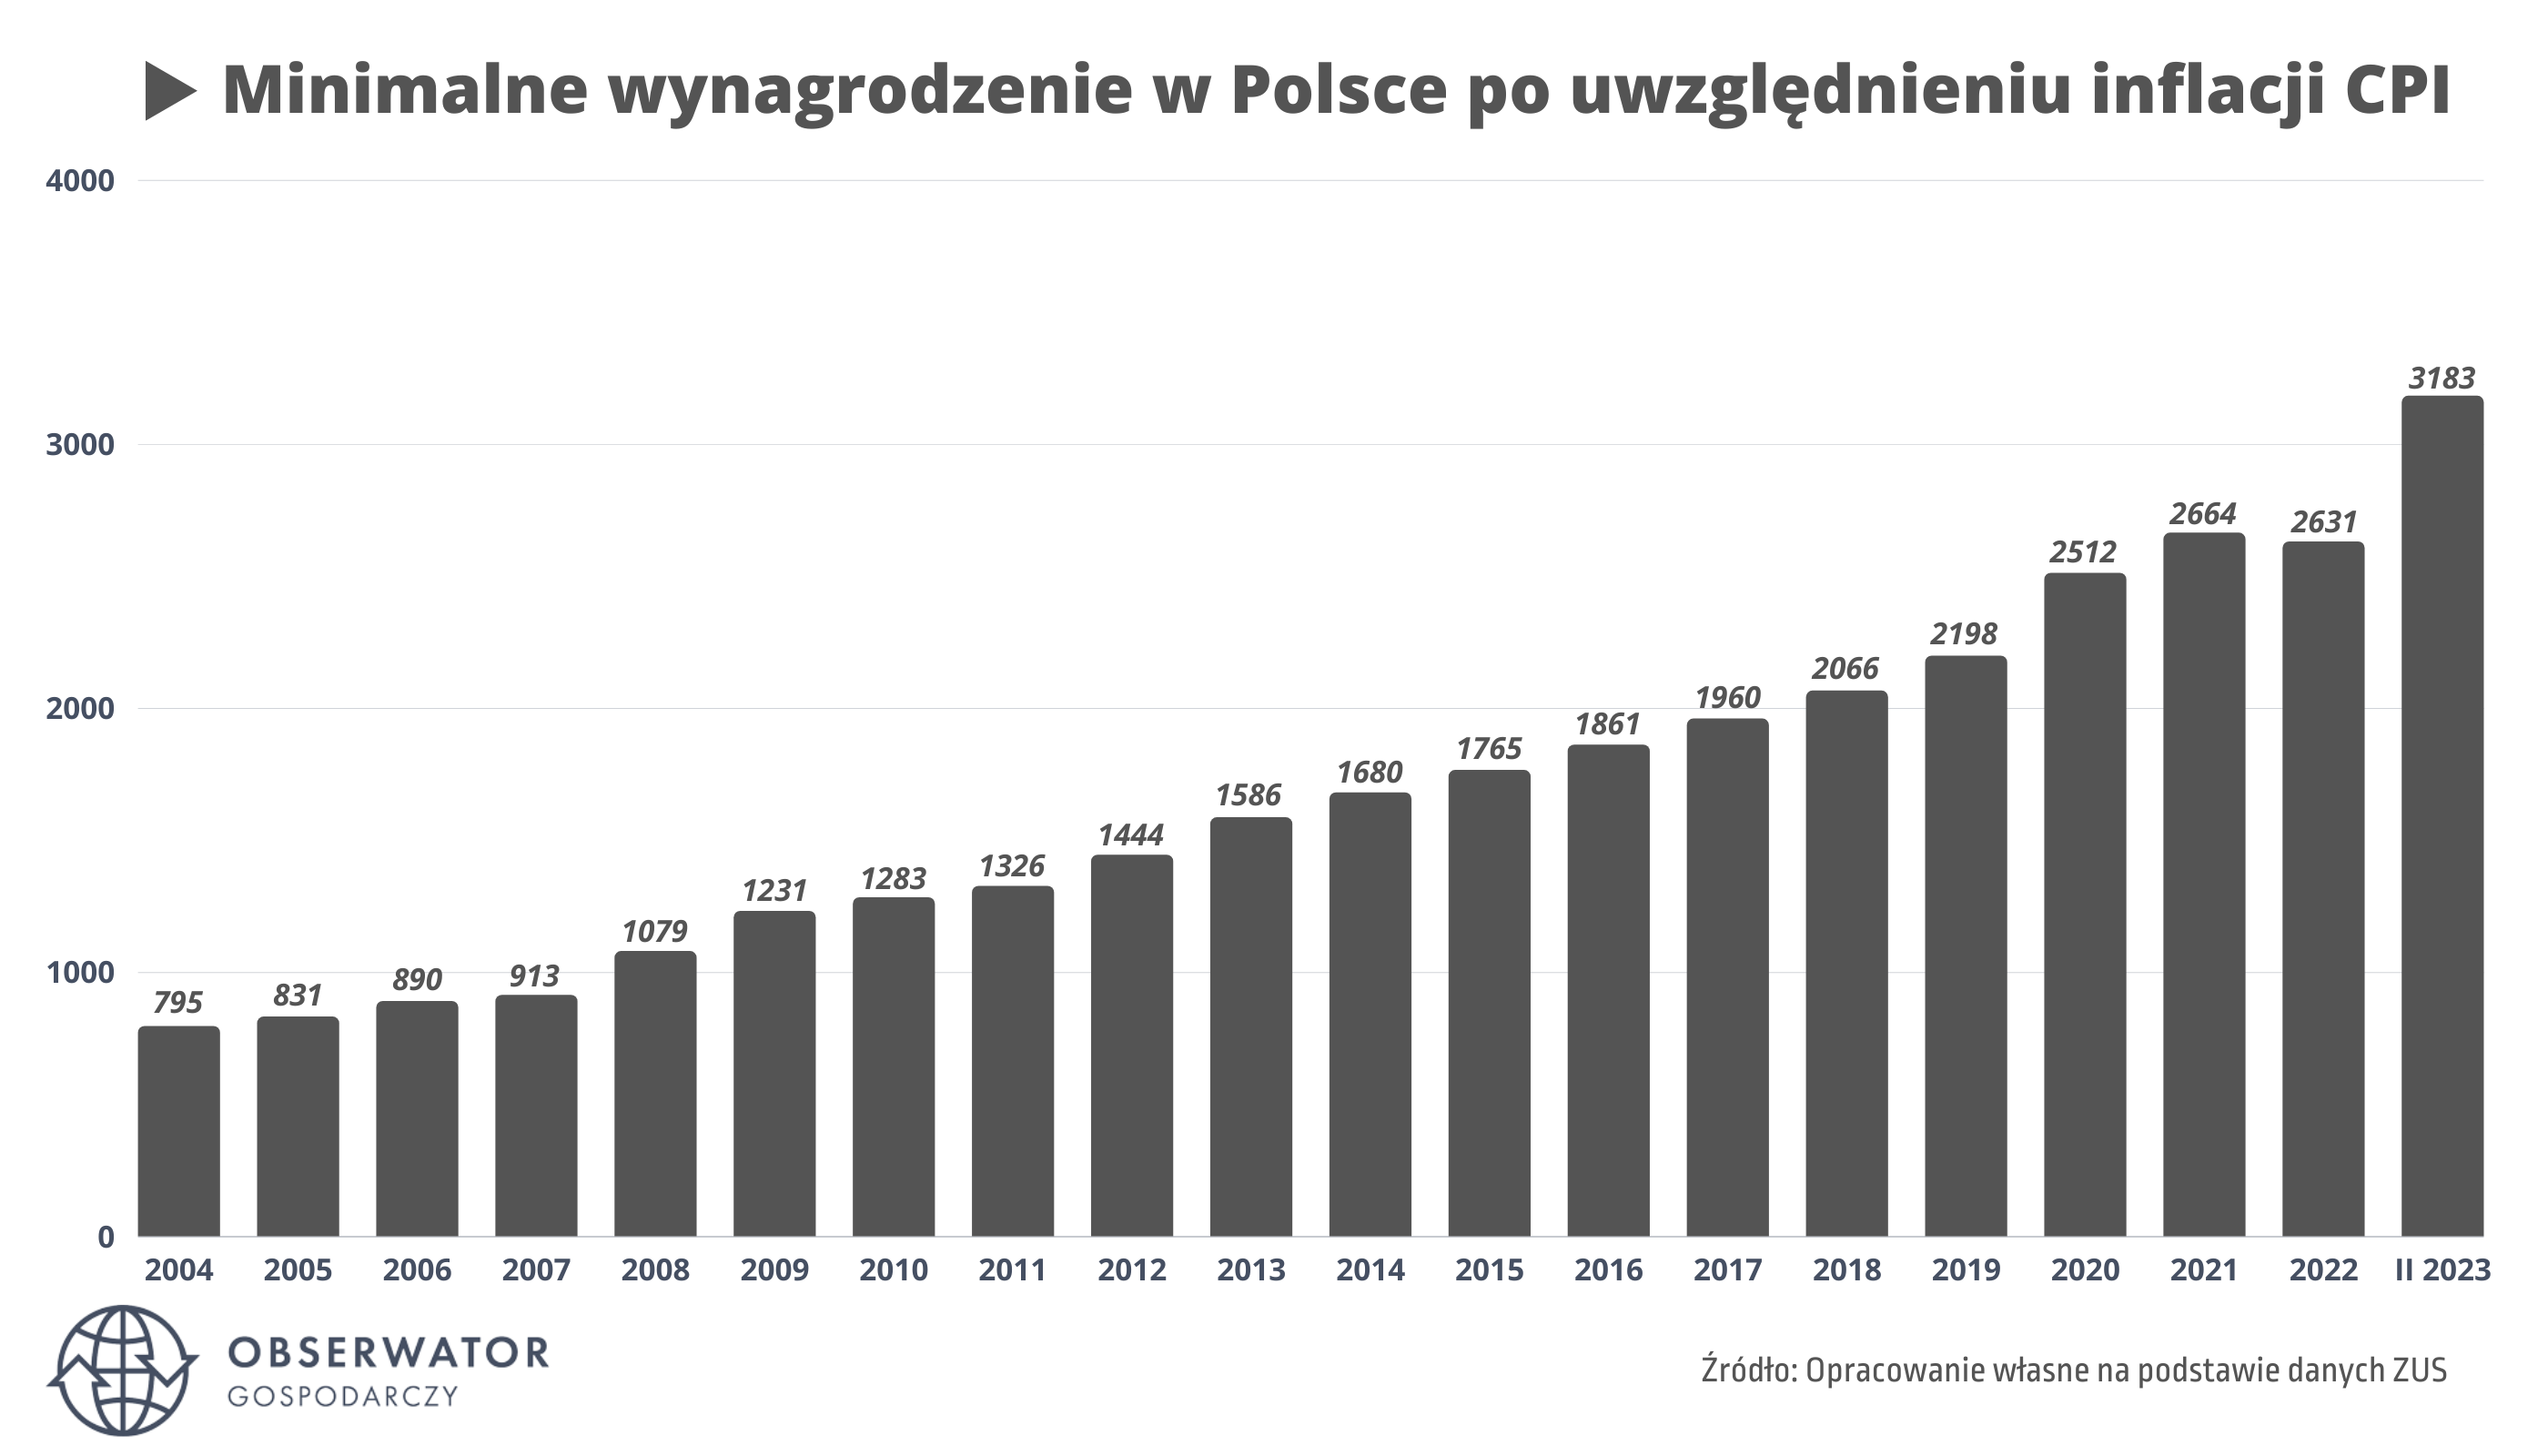 Minimalne wynagrodzenie w Polsce 2004 - 2023